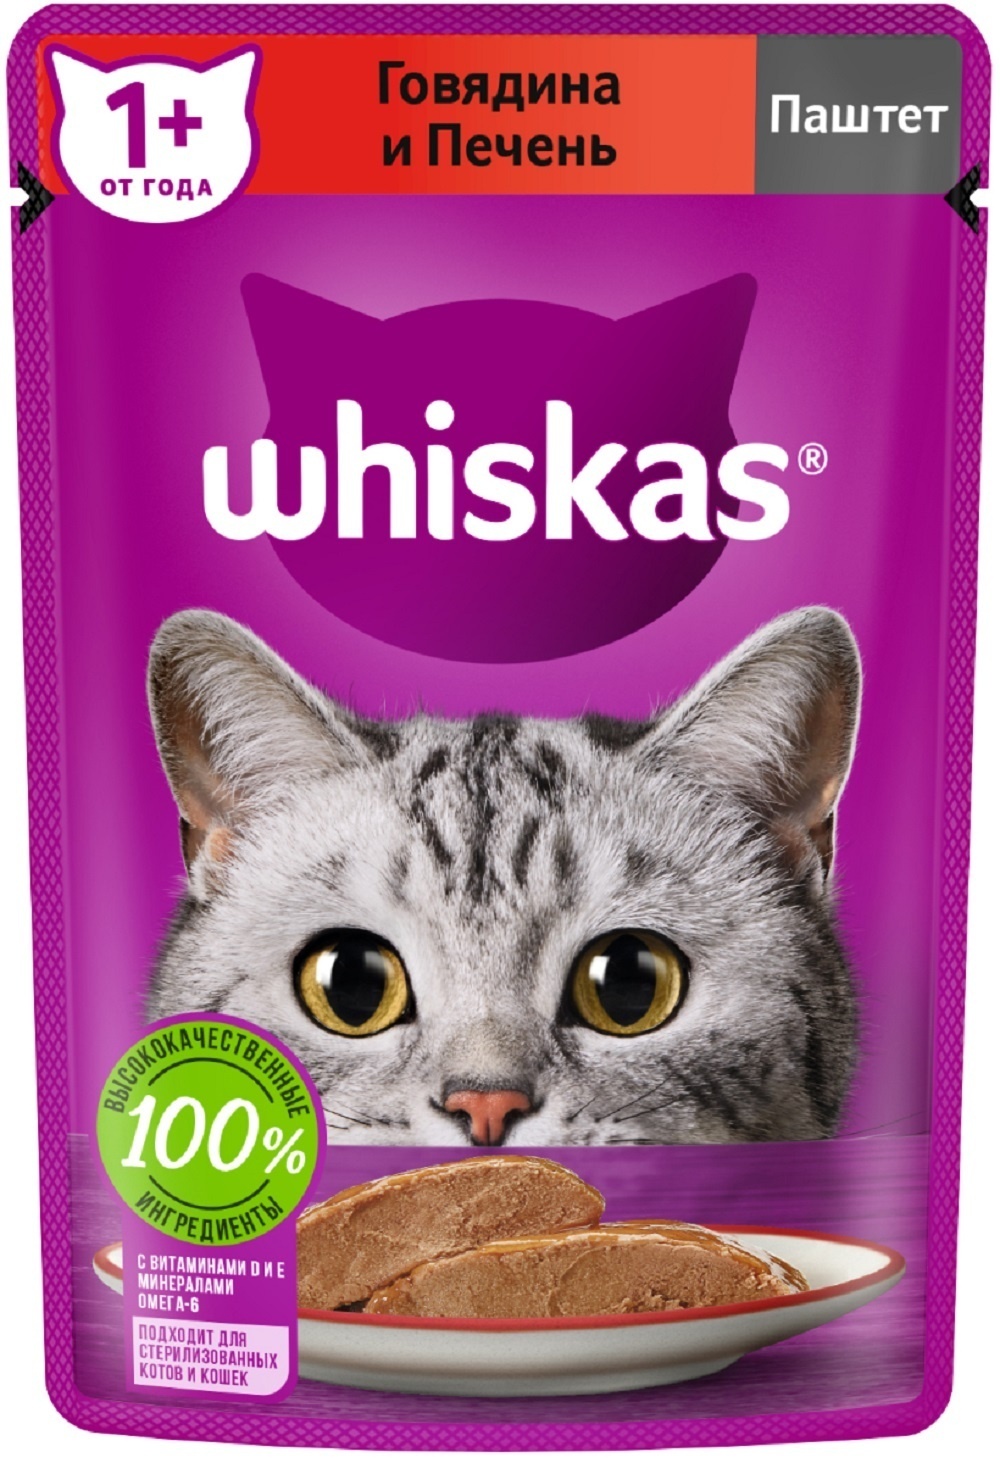 Whiskas Whiskas влажный корм для кошек, паштет из говядины с печенью (75 г) корм для кошек whiskas паштет с уткой 75 г